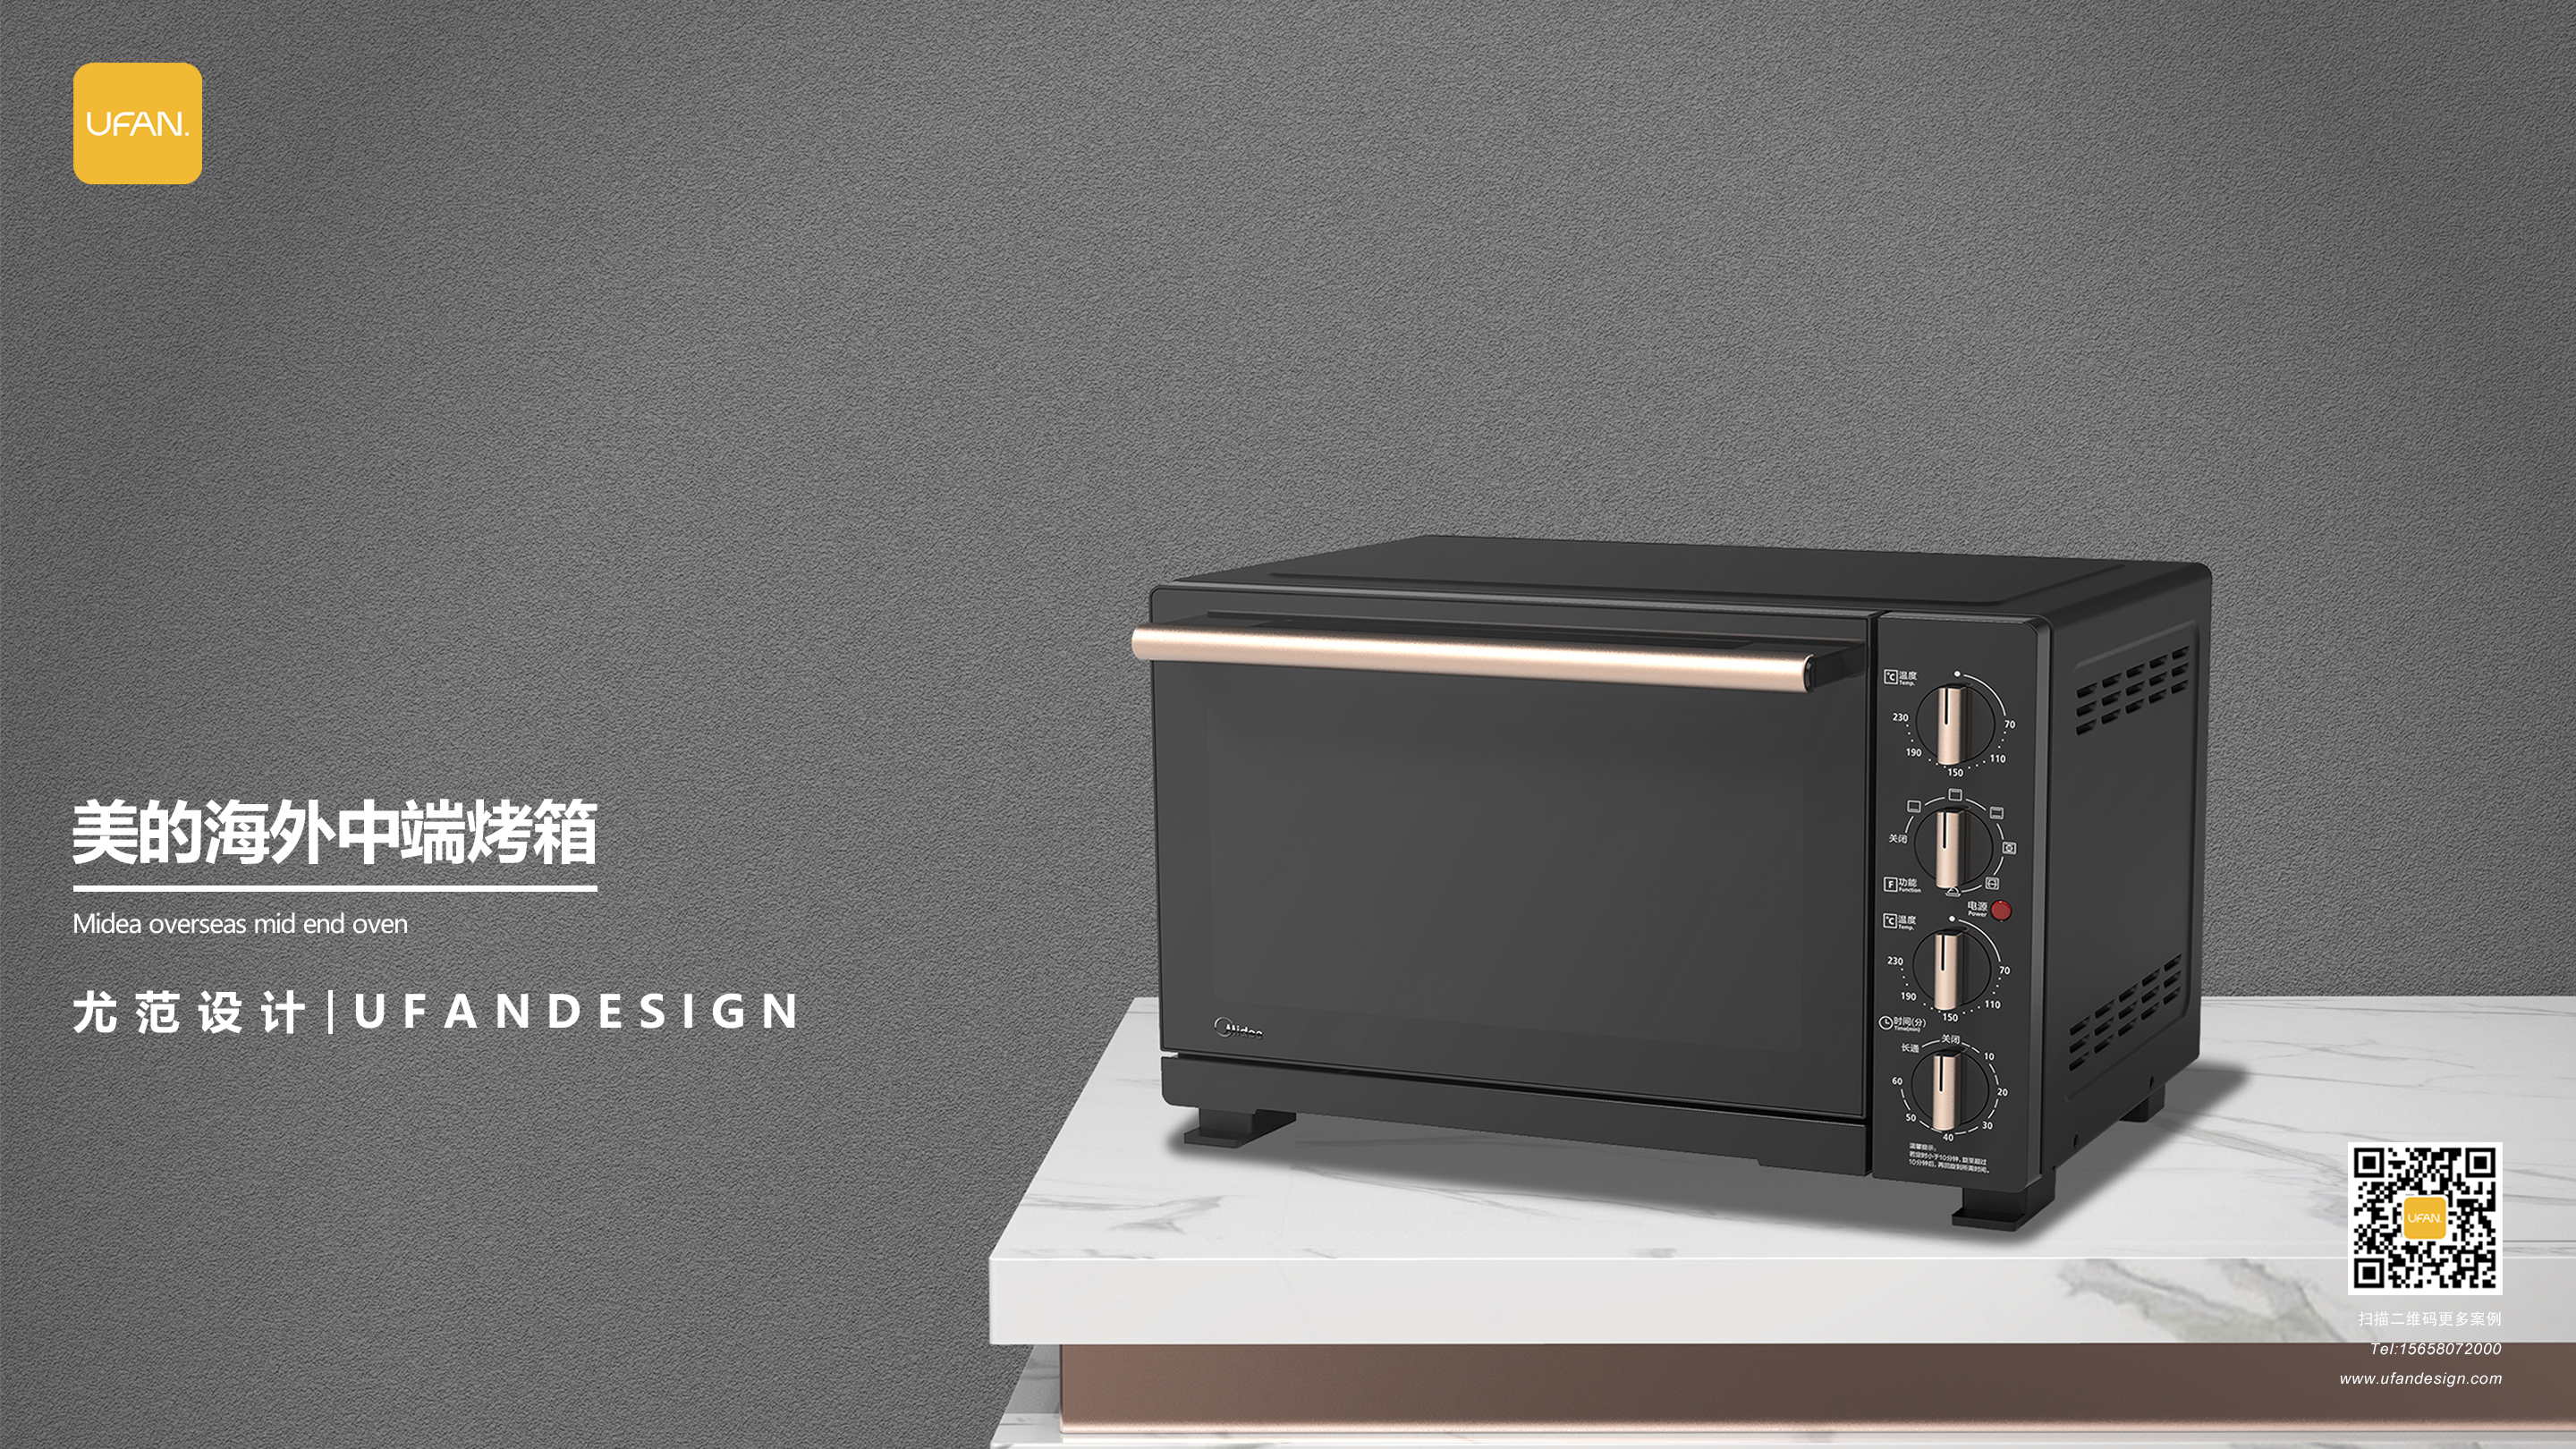 杭州尤范设计工业设计公司-烤箱设计公司-烤箱外观设计02.jpg